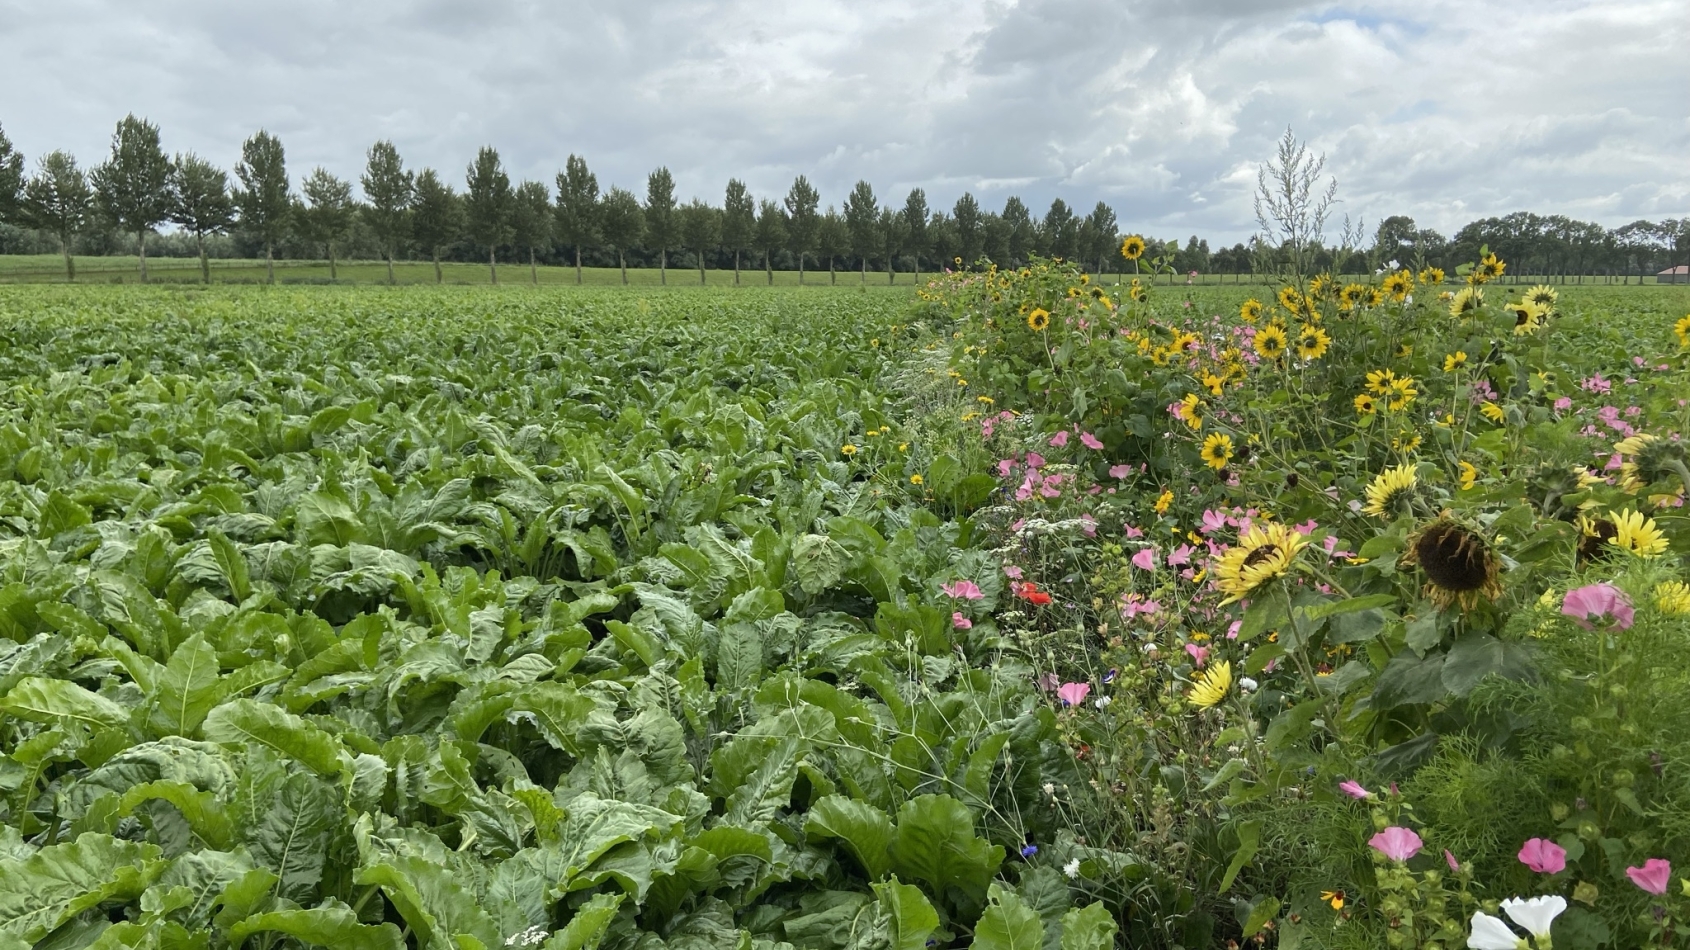 Bloemrijke akkerrand: gewassen staan naast een strook met kleurrijke veldbloemen